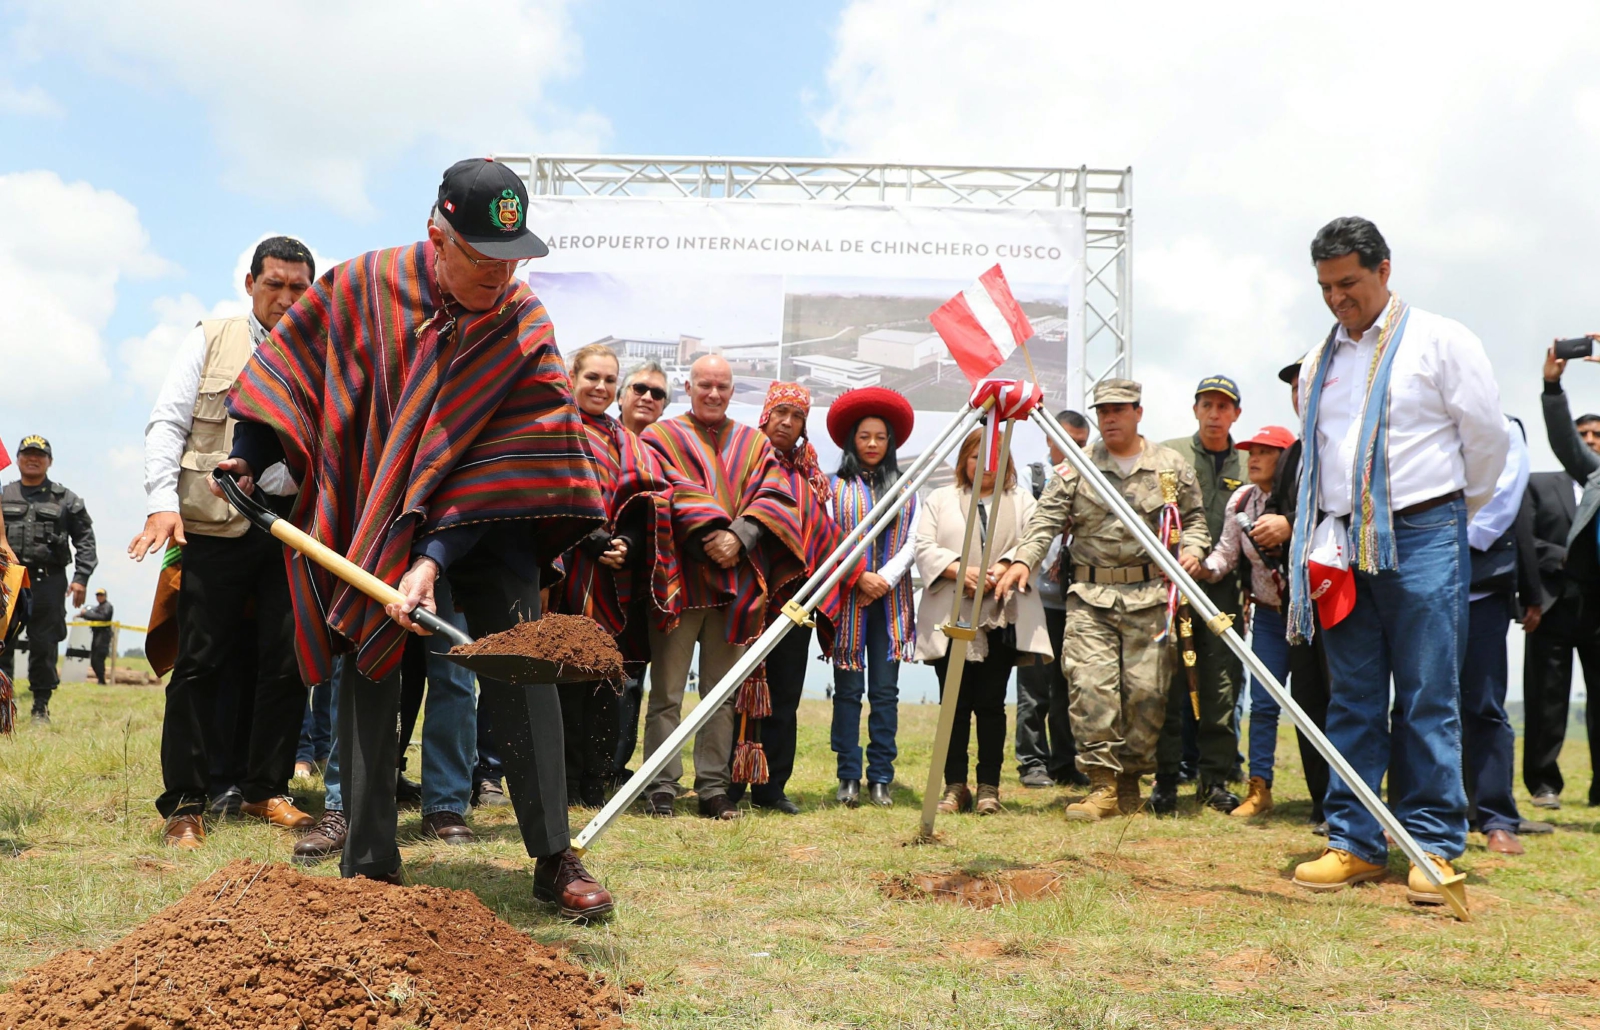 Prezydent Peru, Pedro Pablo Kuczyński kładzie kamień węgielny pod budowę nowego, międzynarodowego lotniska w Cuzco.
Fot. PAP/EPA/PRESIDENCY OF PERU